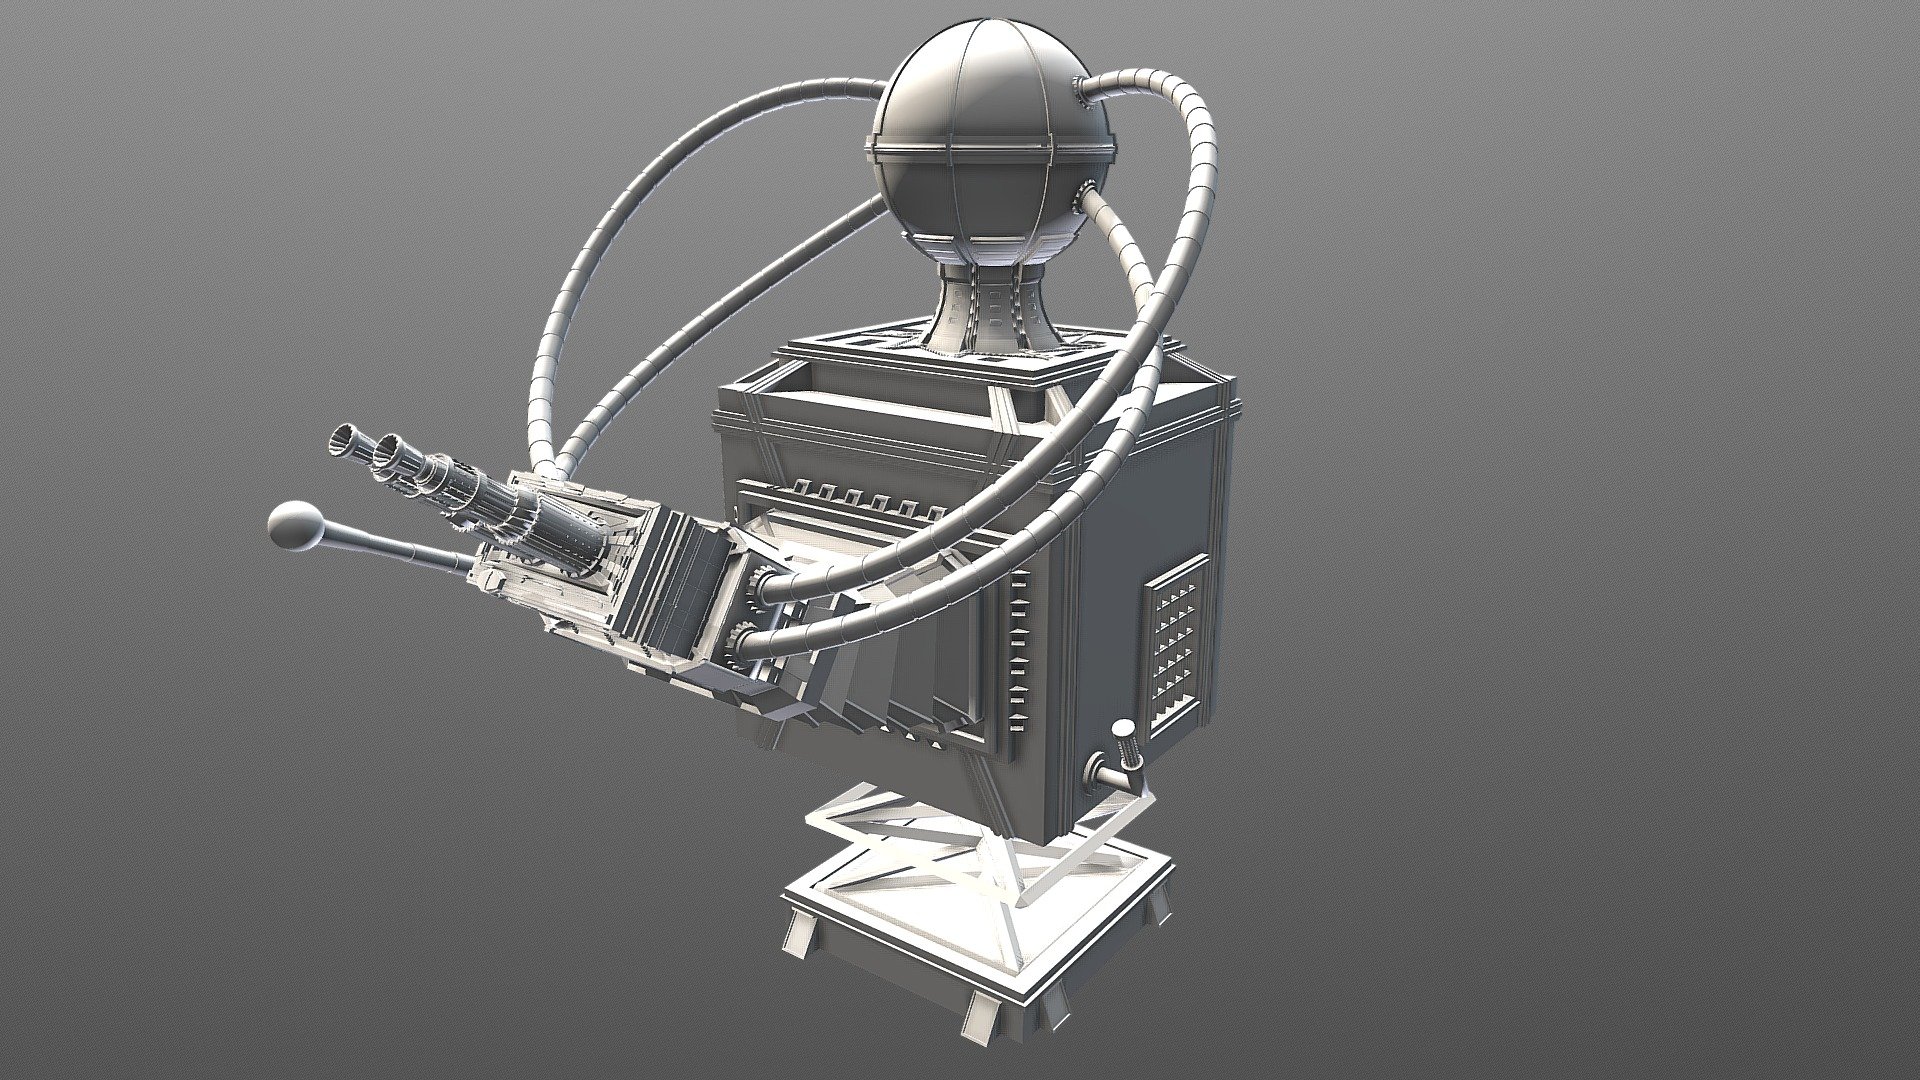 Maszyna - 3D model by maciejkovalski [c3fd871] - Sketchfab